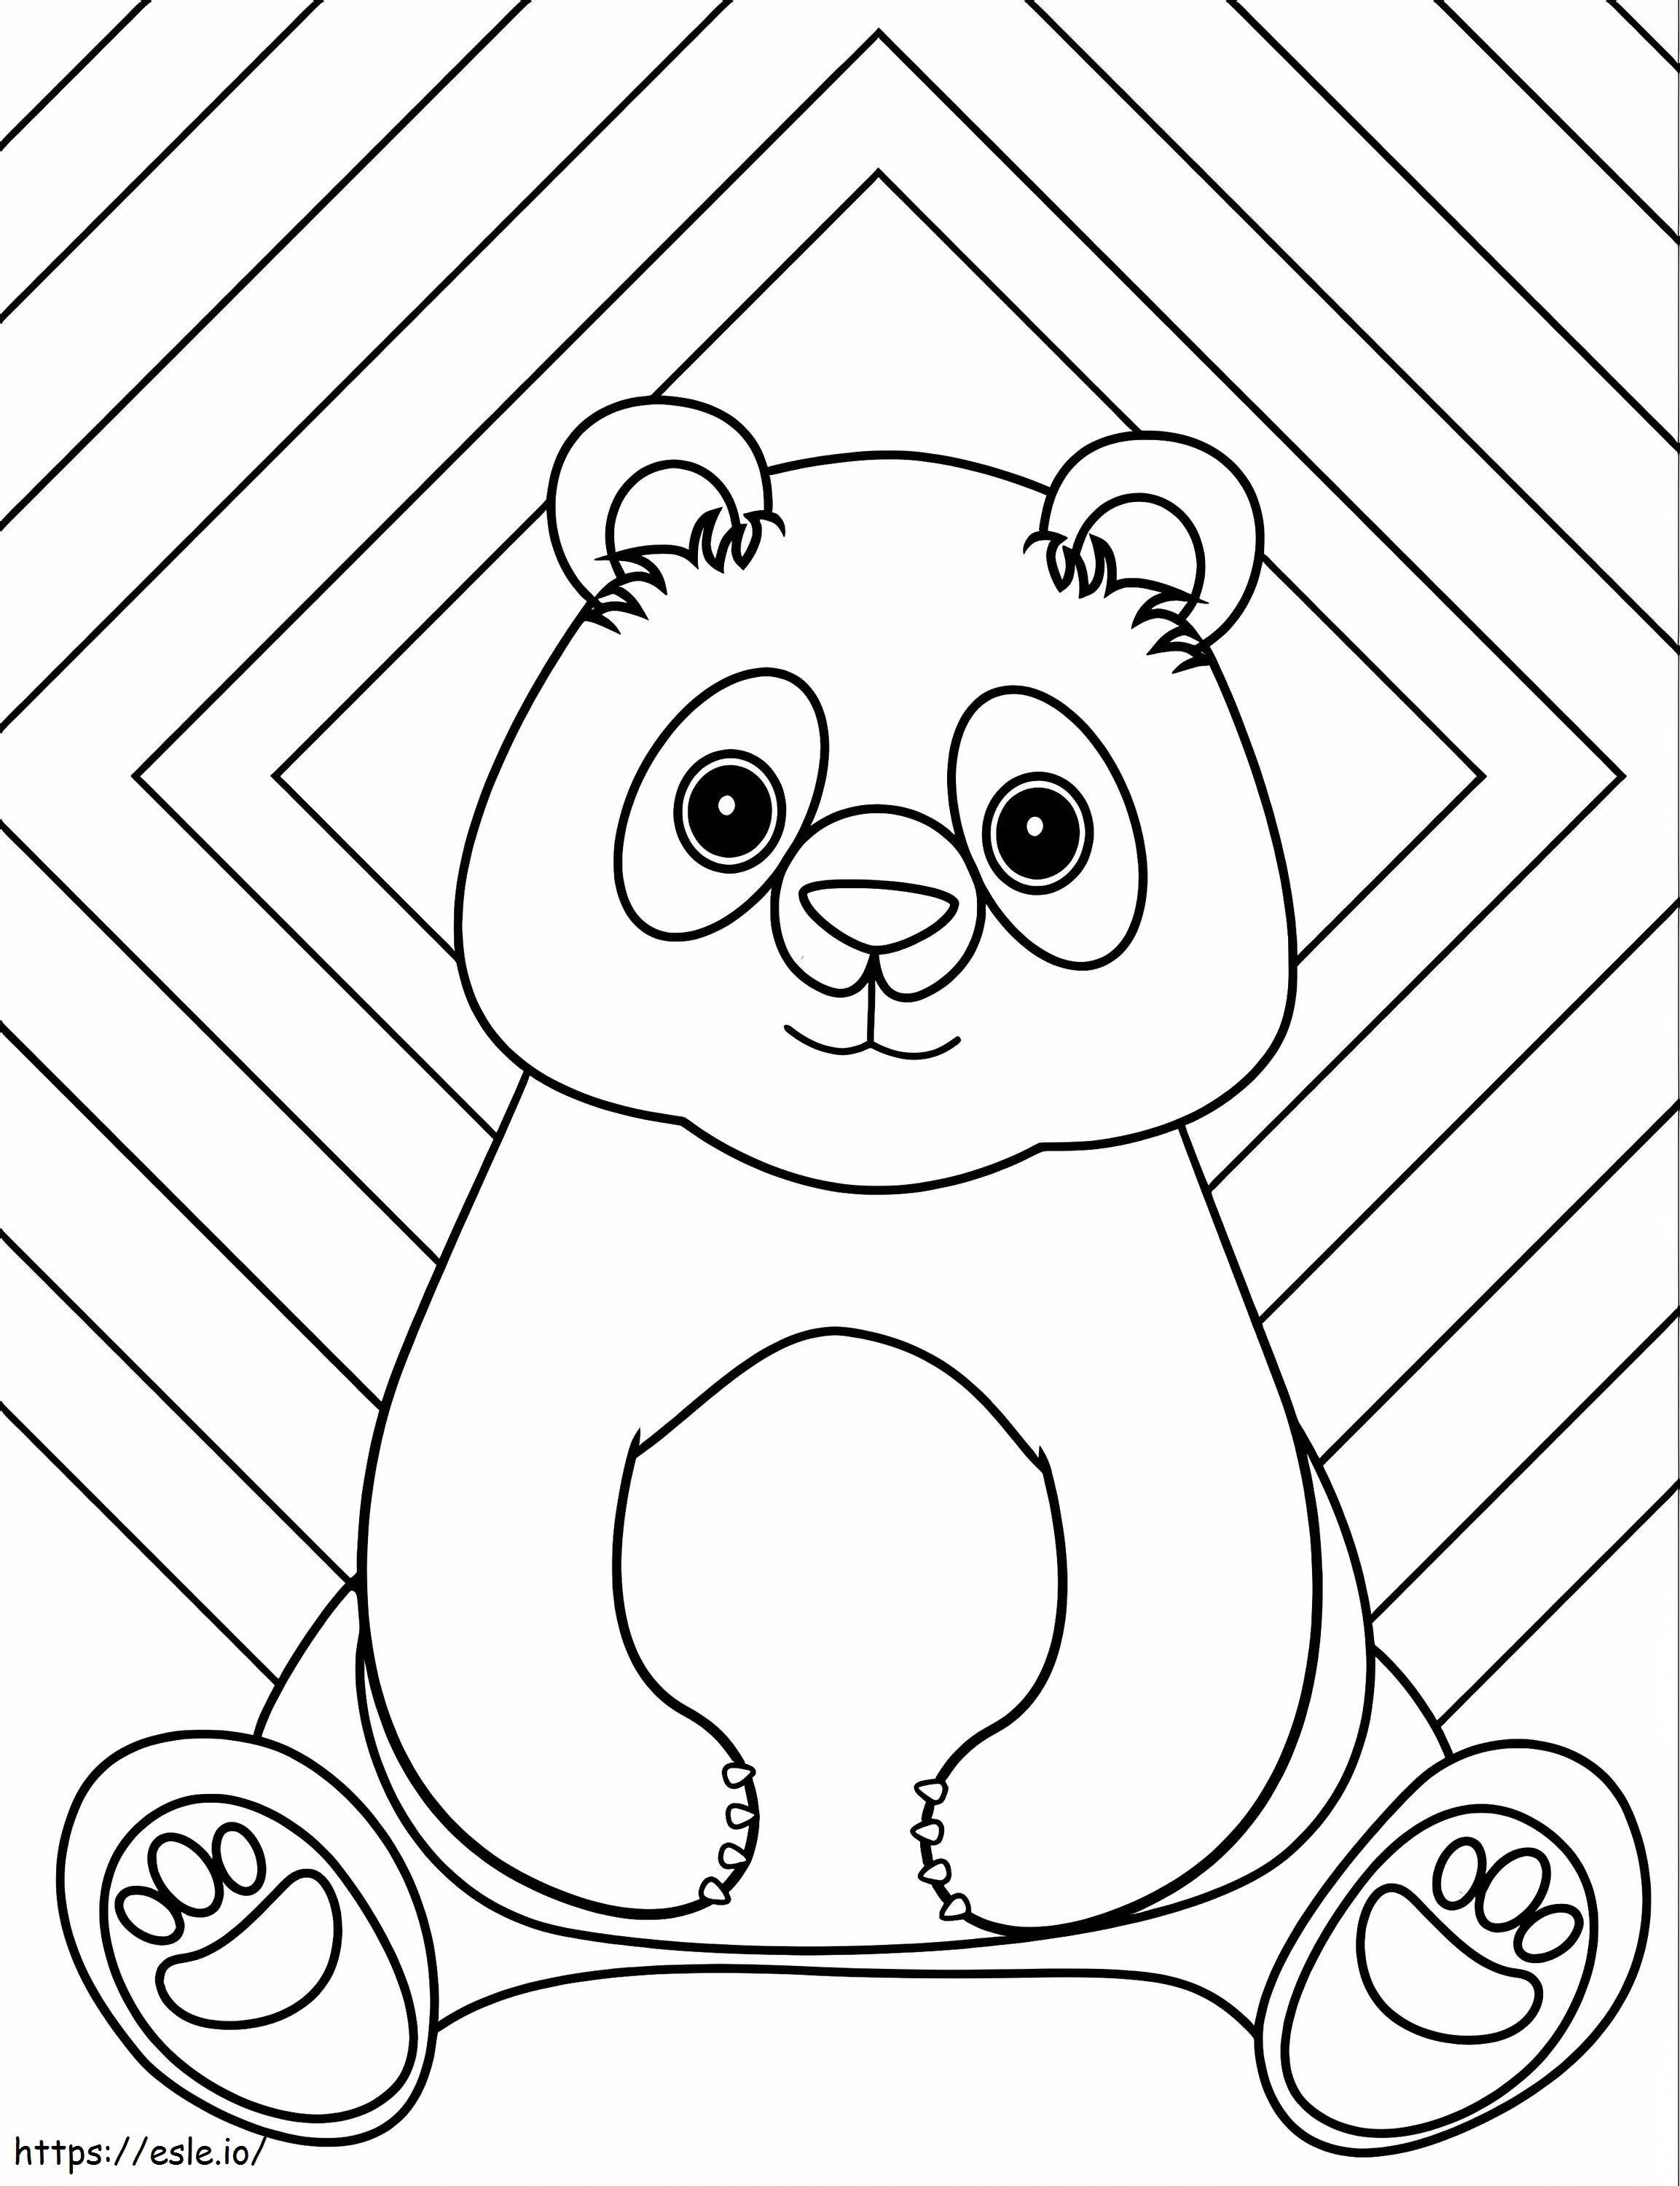 Un panda seduto da colorare